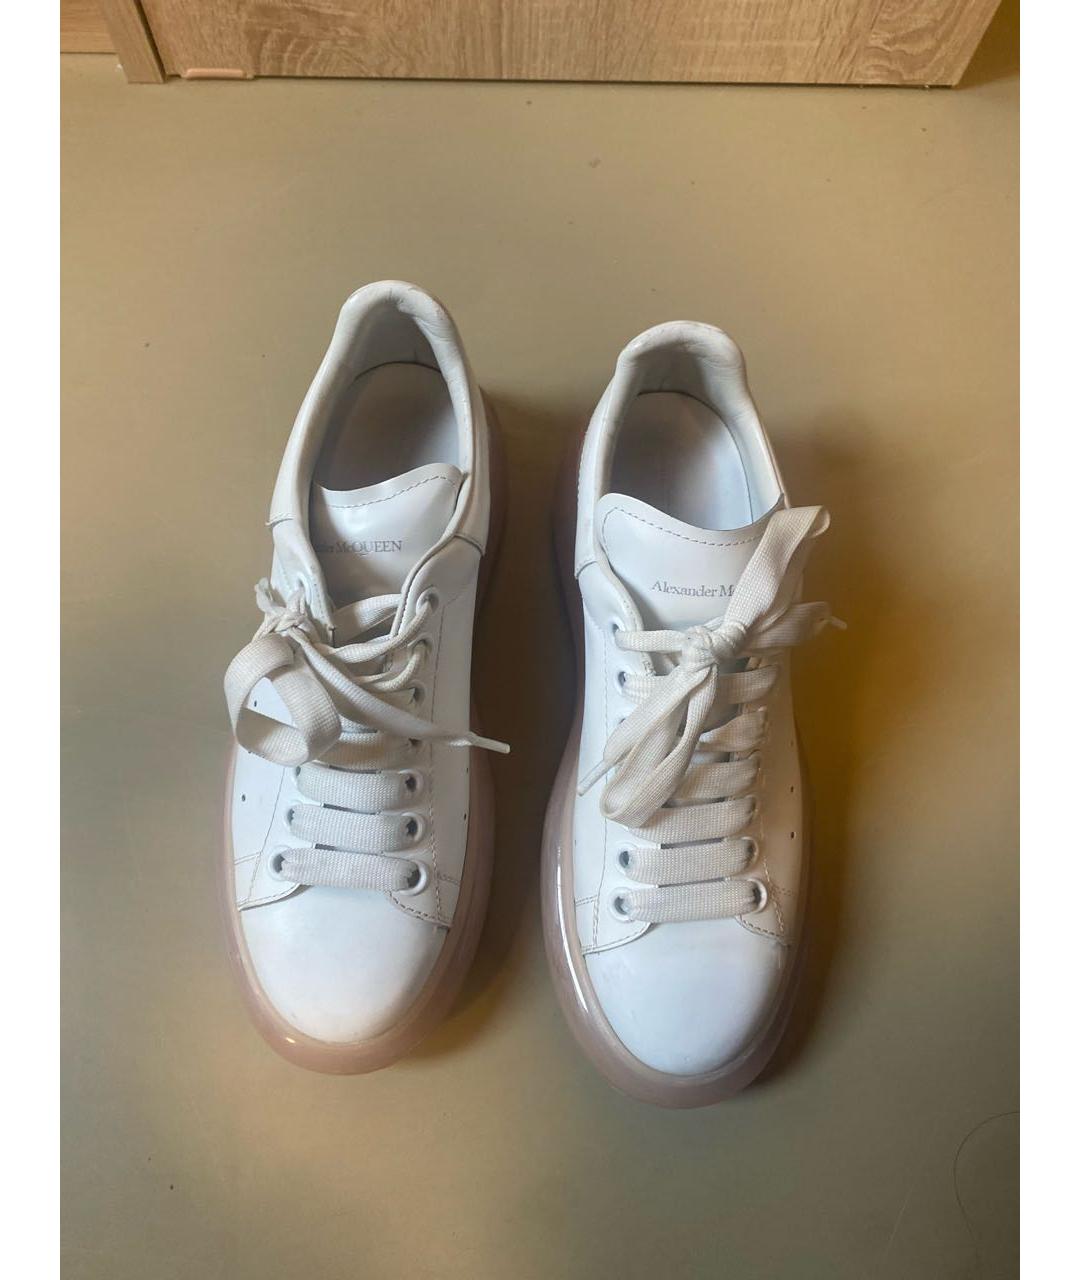 ALEXANDER MCQUEEN Белые кожаные кроссовки, фото 2